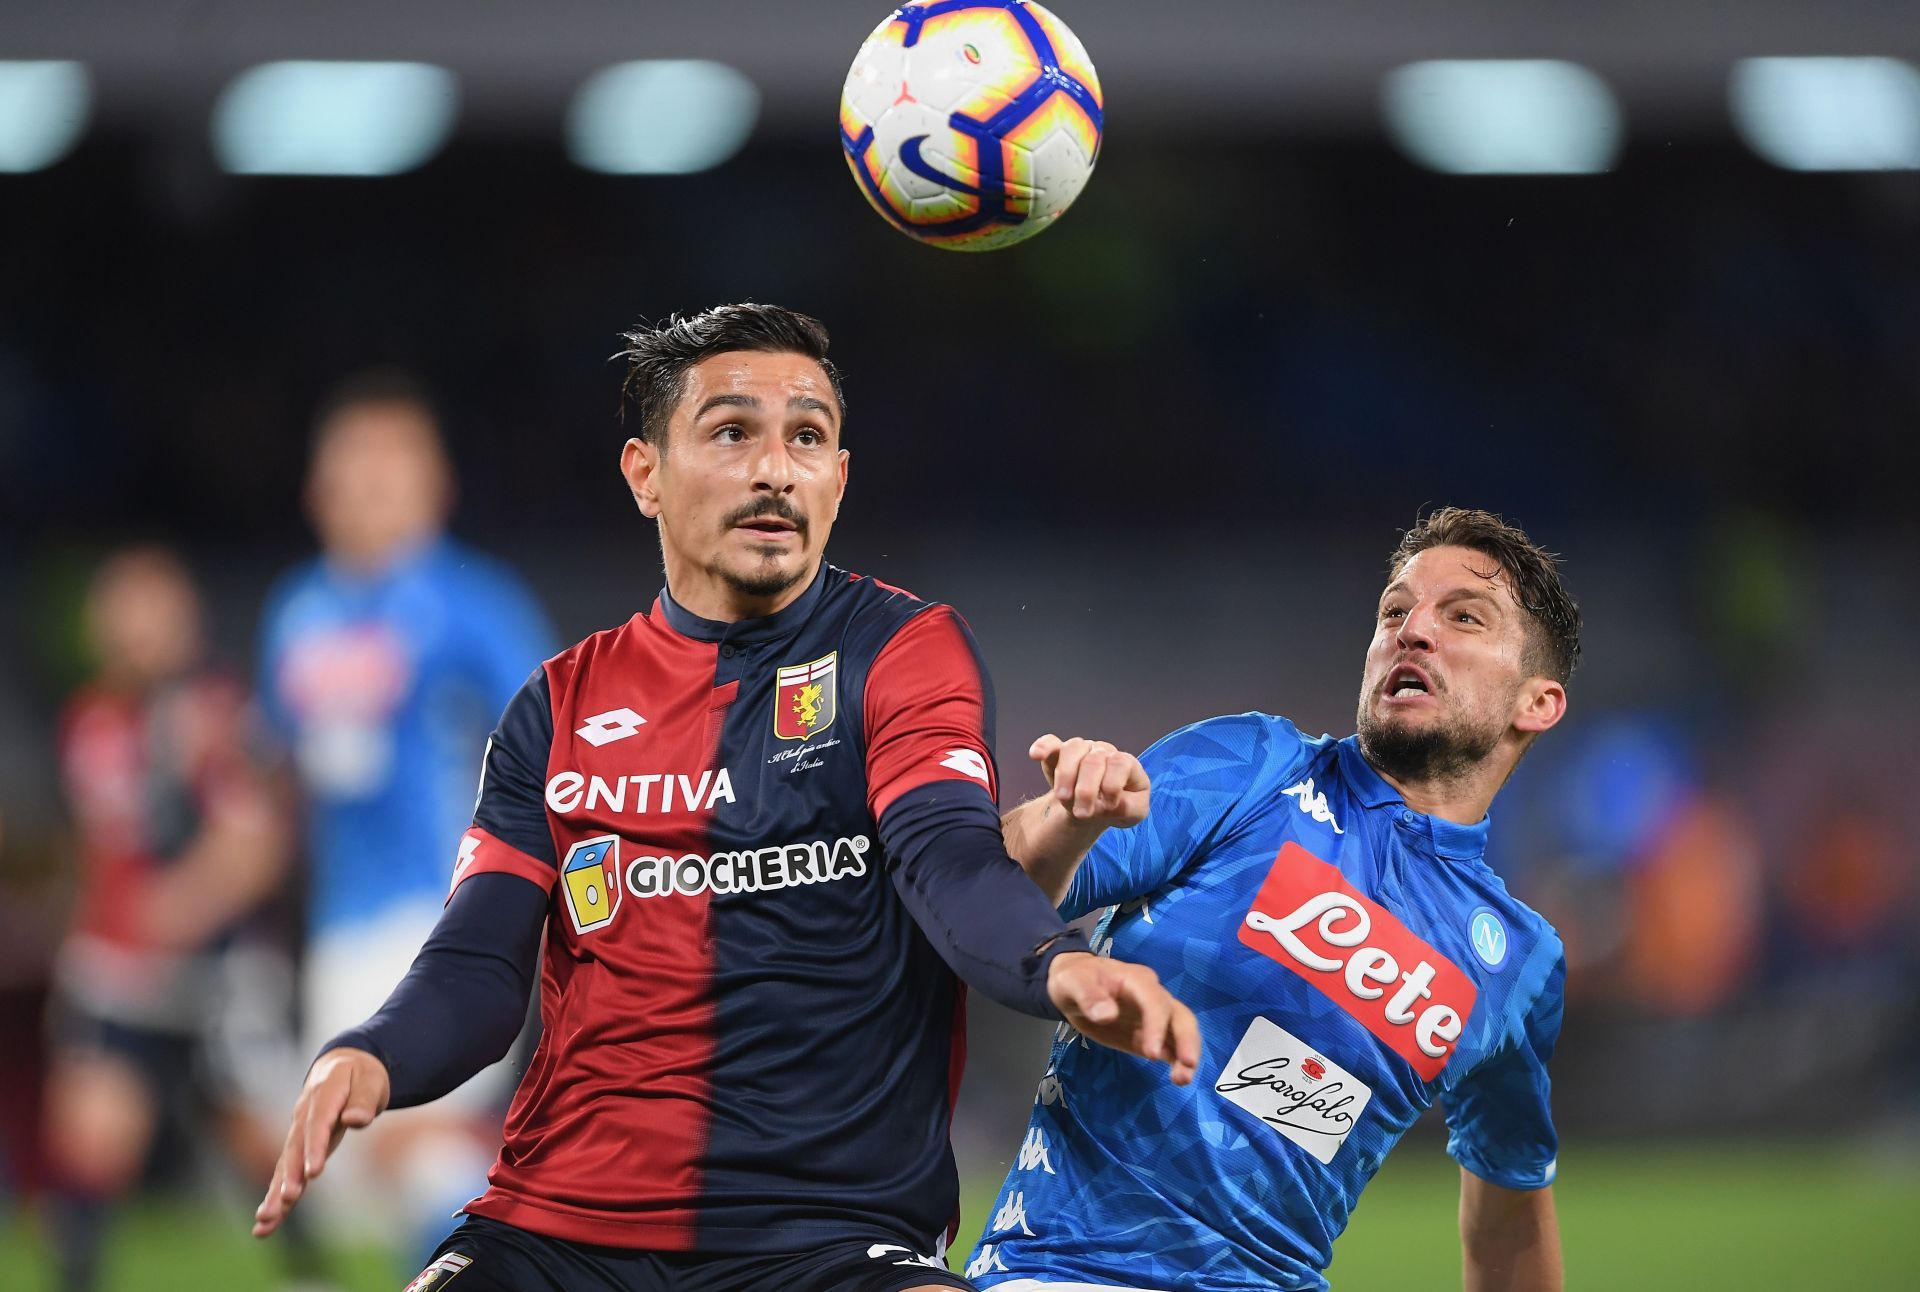 Napoli play host to Genoa on Sunday